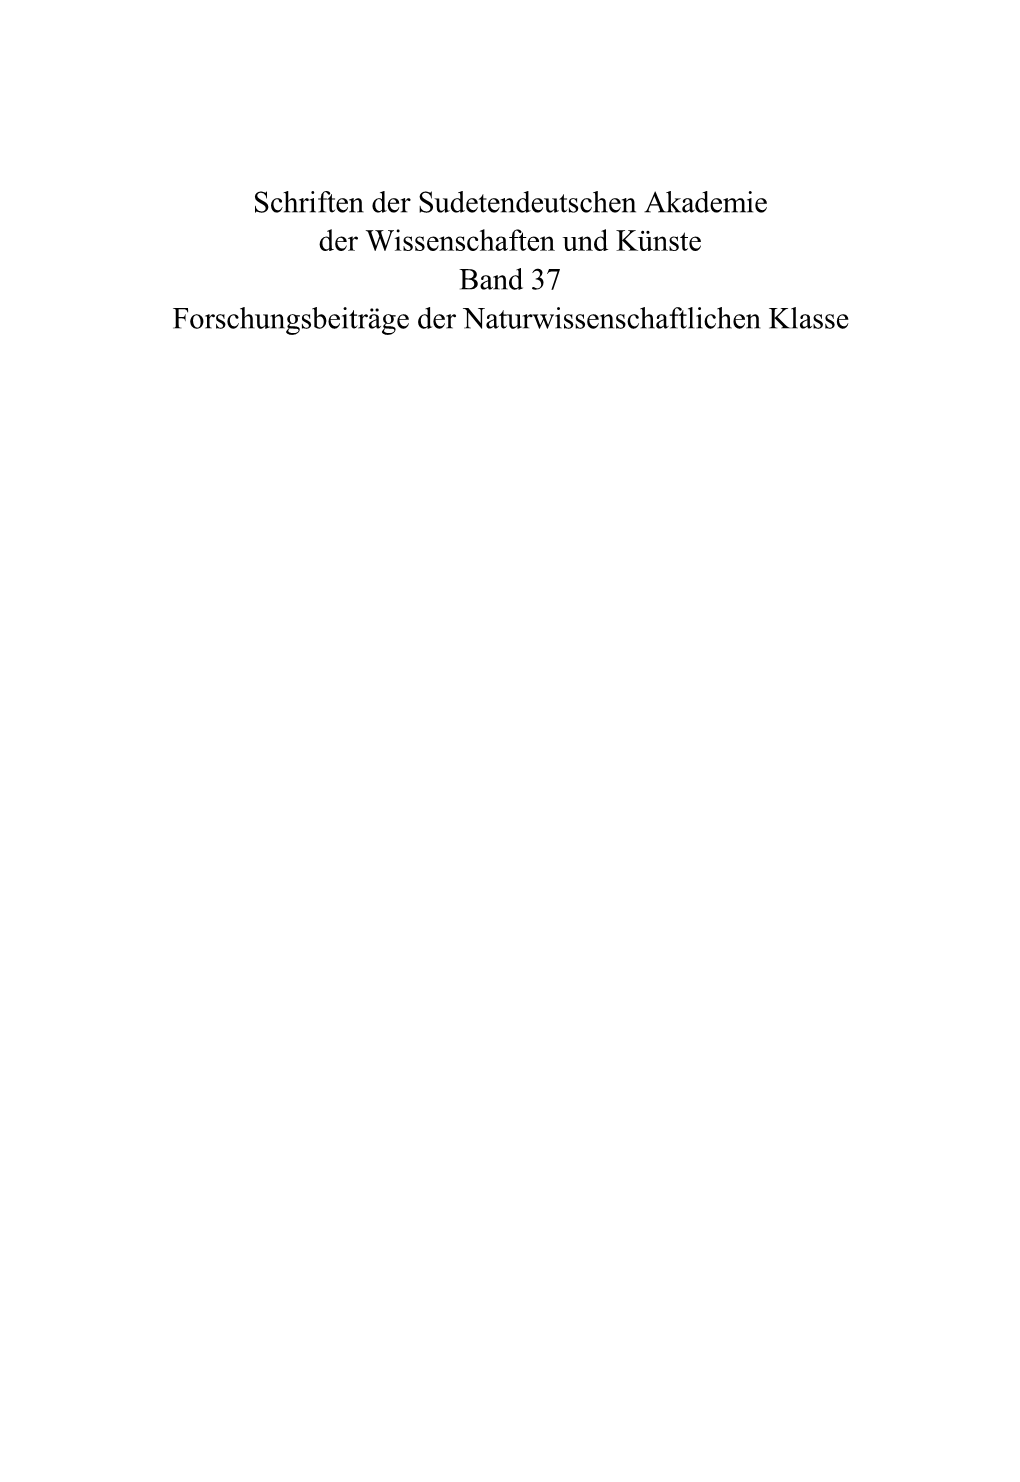 Schriften Der Sudetendeutschen Akademie Der Wissenschaften Und Künste Band 37 Forschungsbeiträge Der Naturwissenschaftlichen Klasse 223